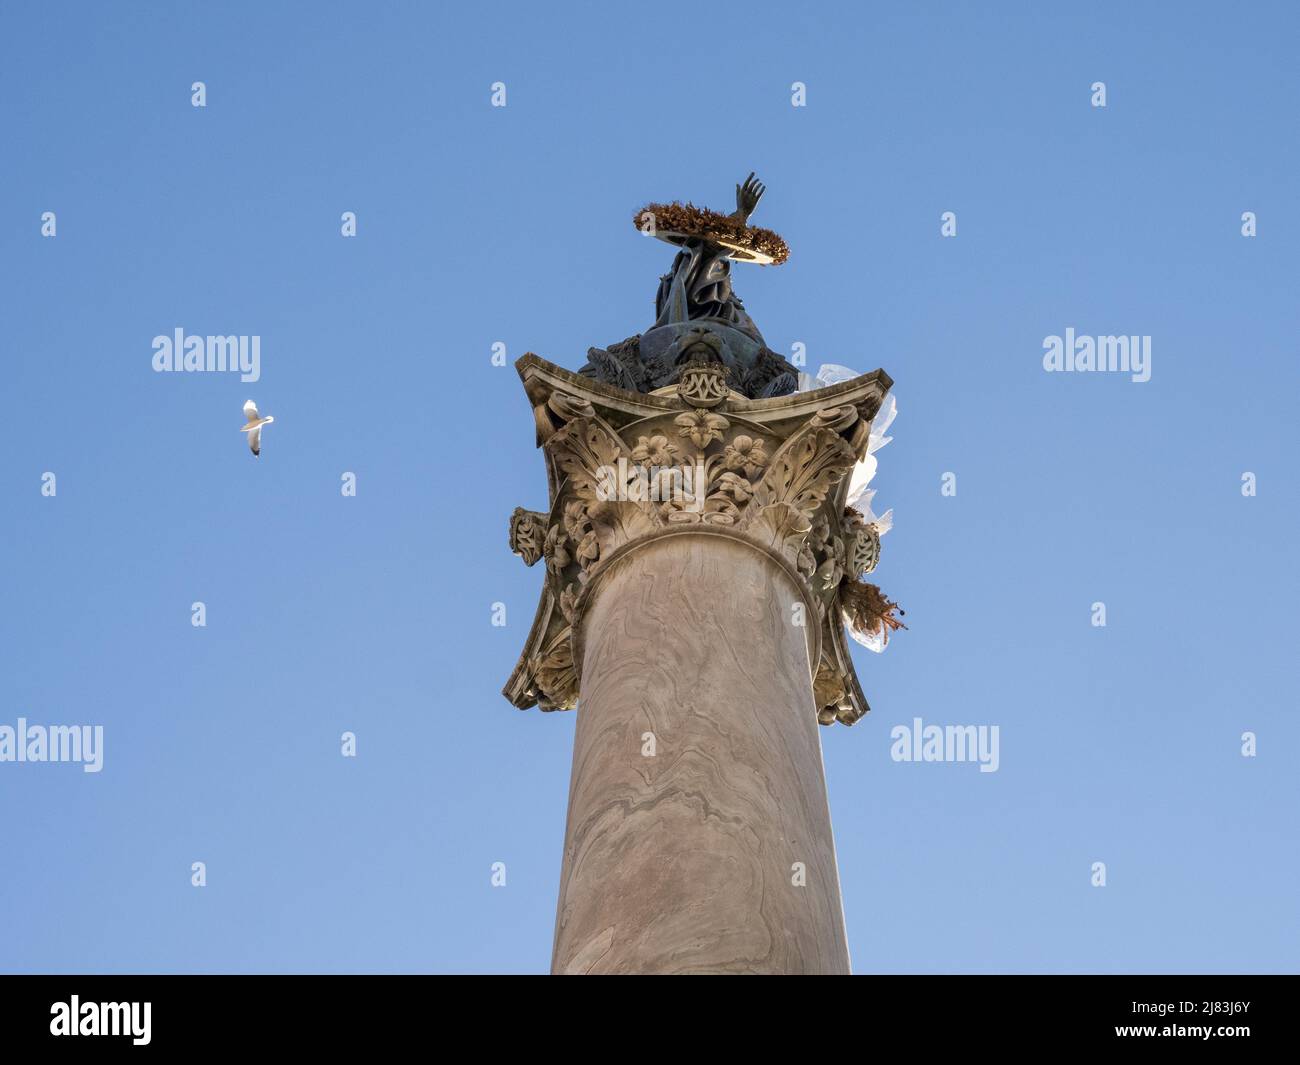 Bronze statue of the Virgin Mary on the Marian Column, Colonna della Vergine, Piazza Santa Maria Maggiore, Rome, Lazio, Italy Stock Photo